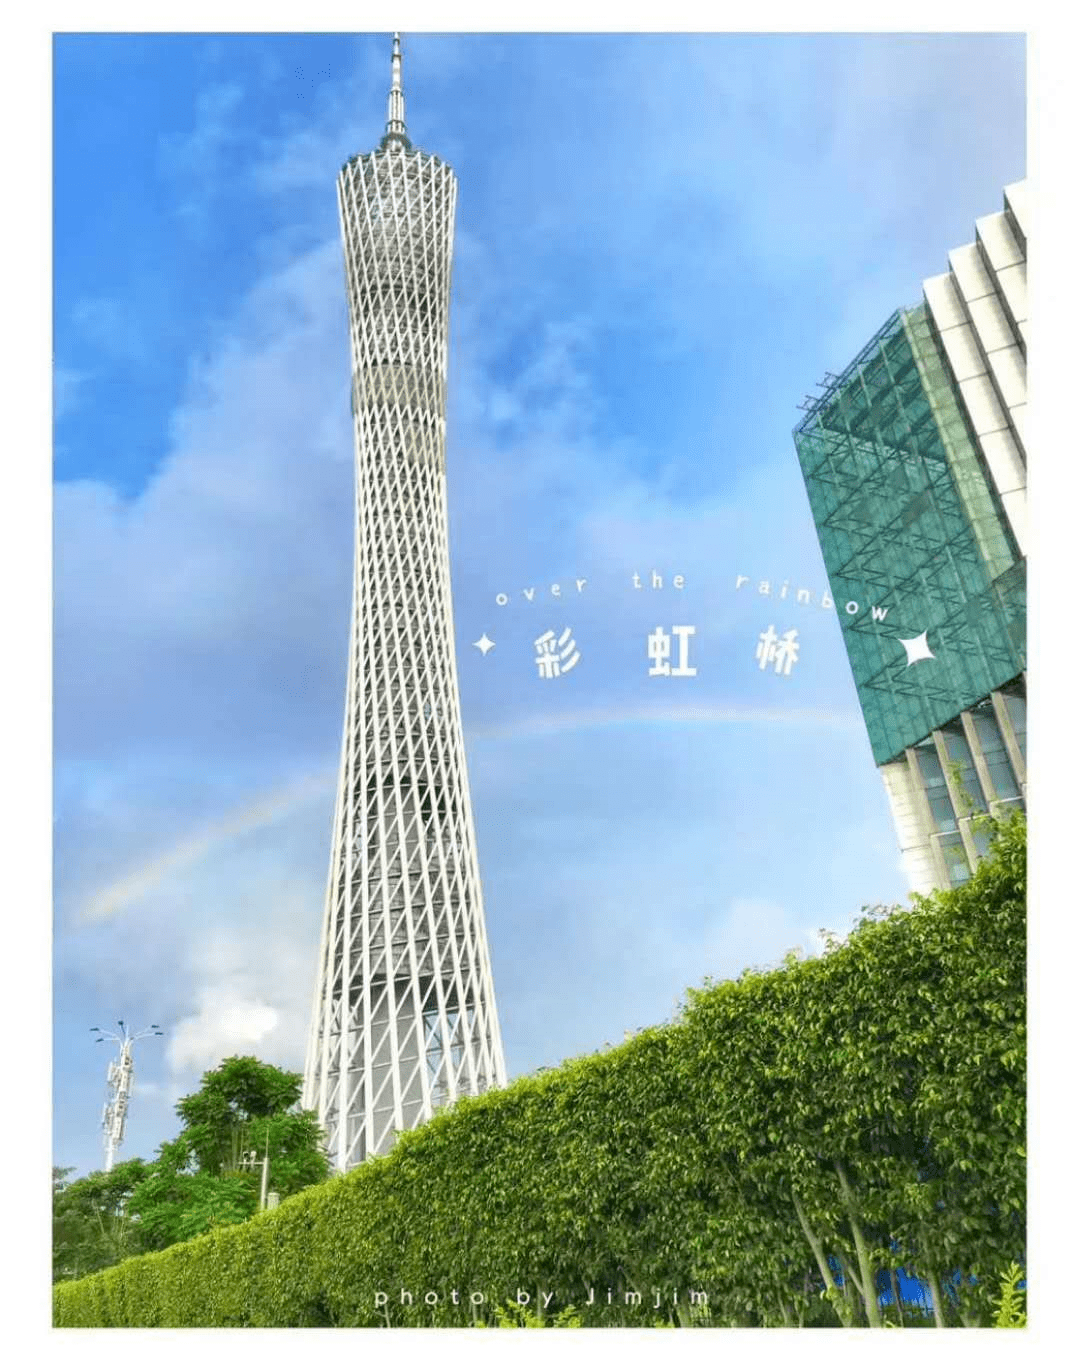 刚刚,广州彩虹刷屏了!太美了!